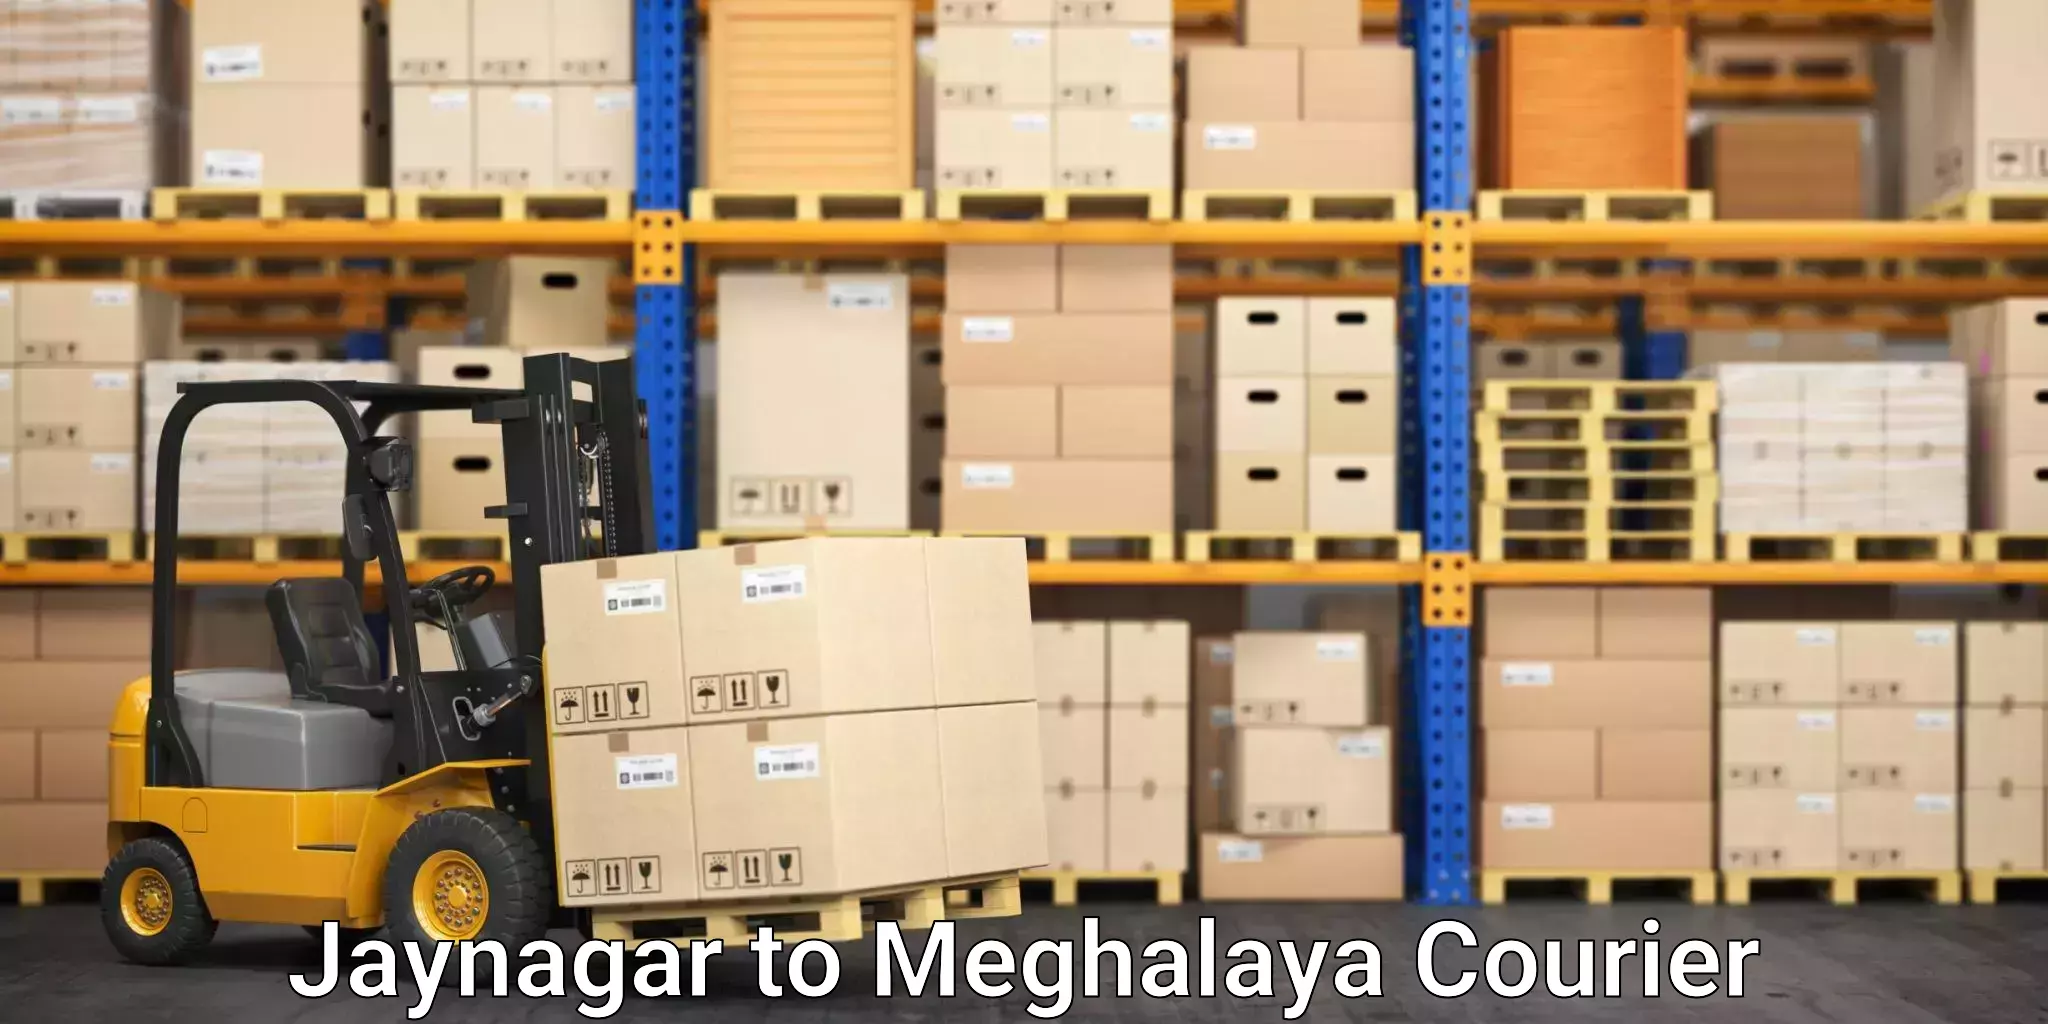 Furniture moving assistance Jaynagar to Meghalaya